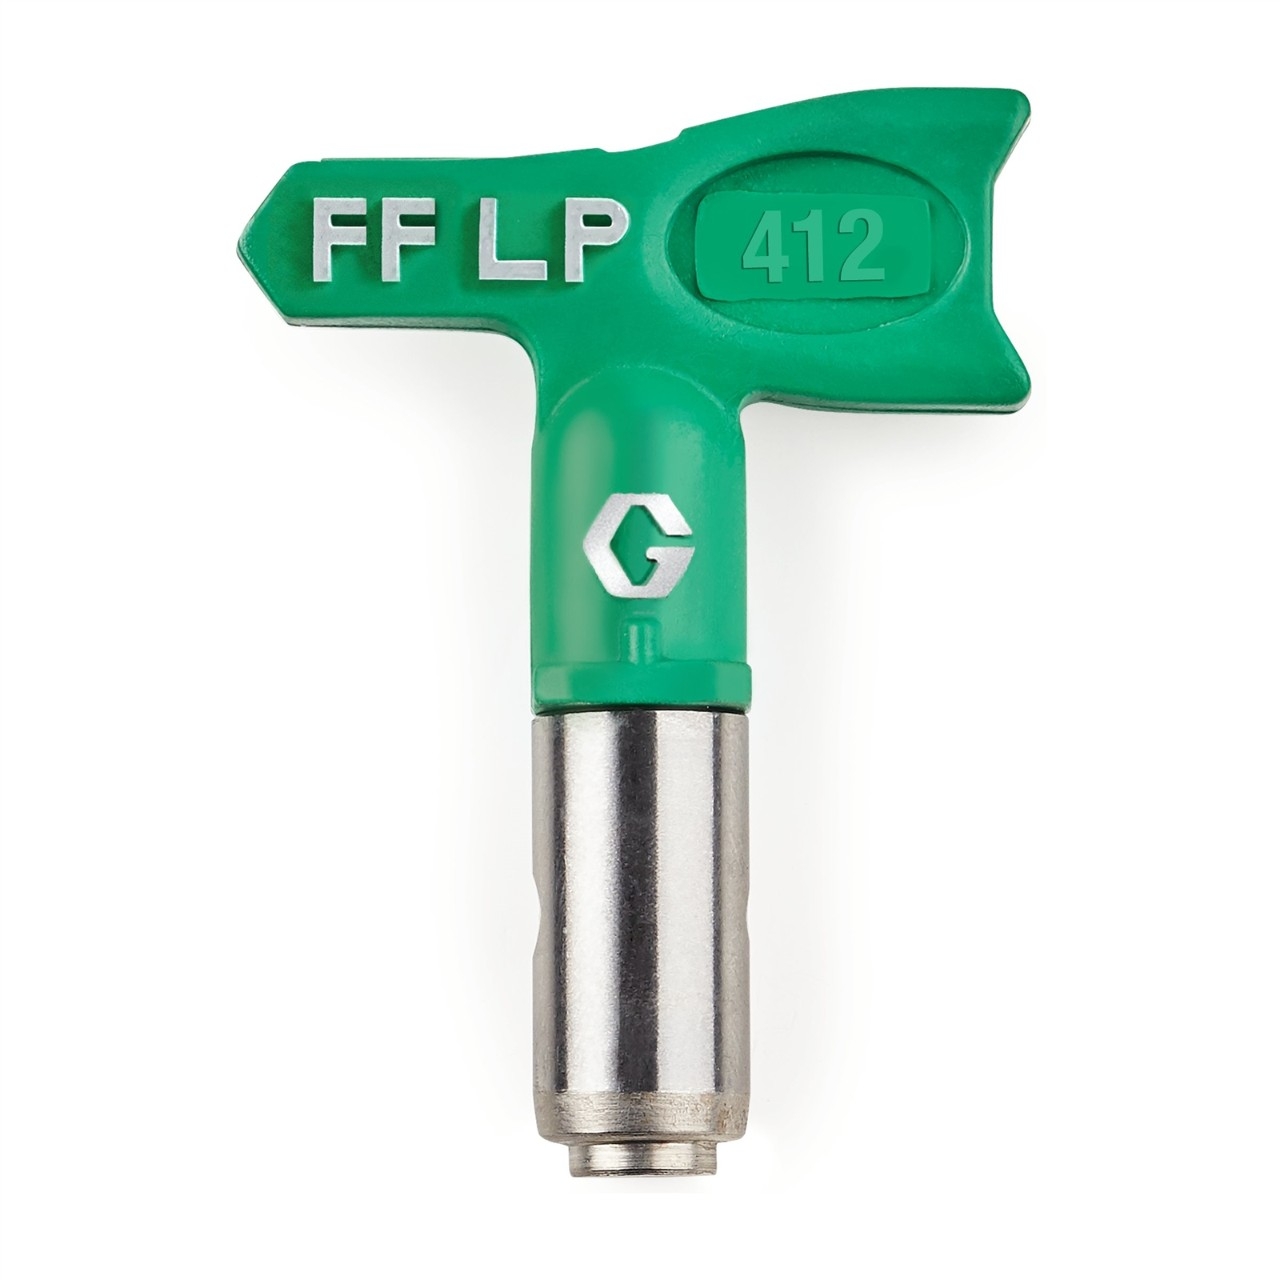  FFLP412	 Duză FFLP SwitchTip 412, pentru finisaj fin la presiune scăzută, compatibilă cu RAC X